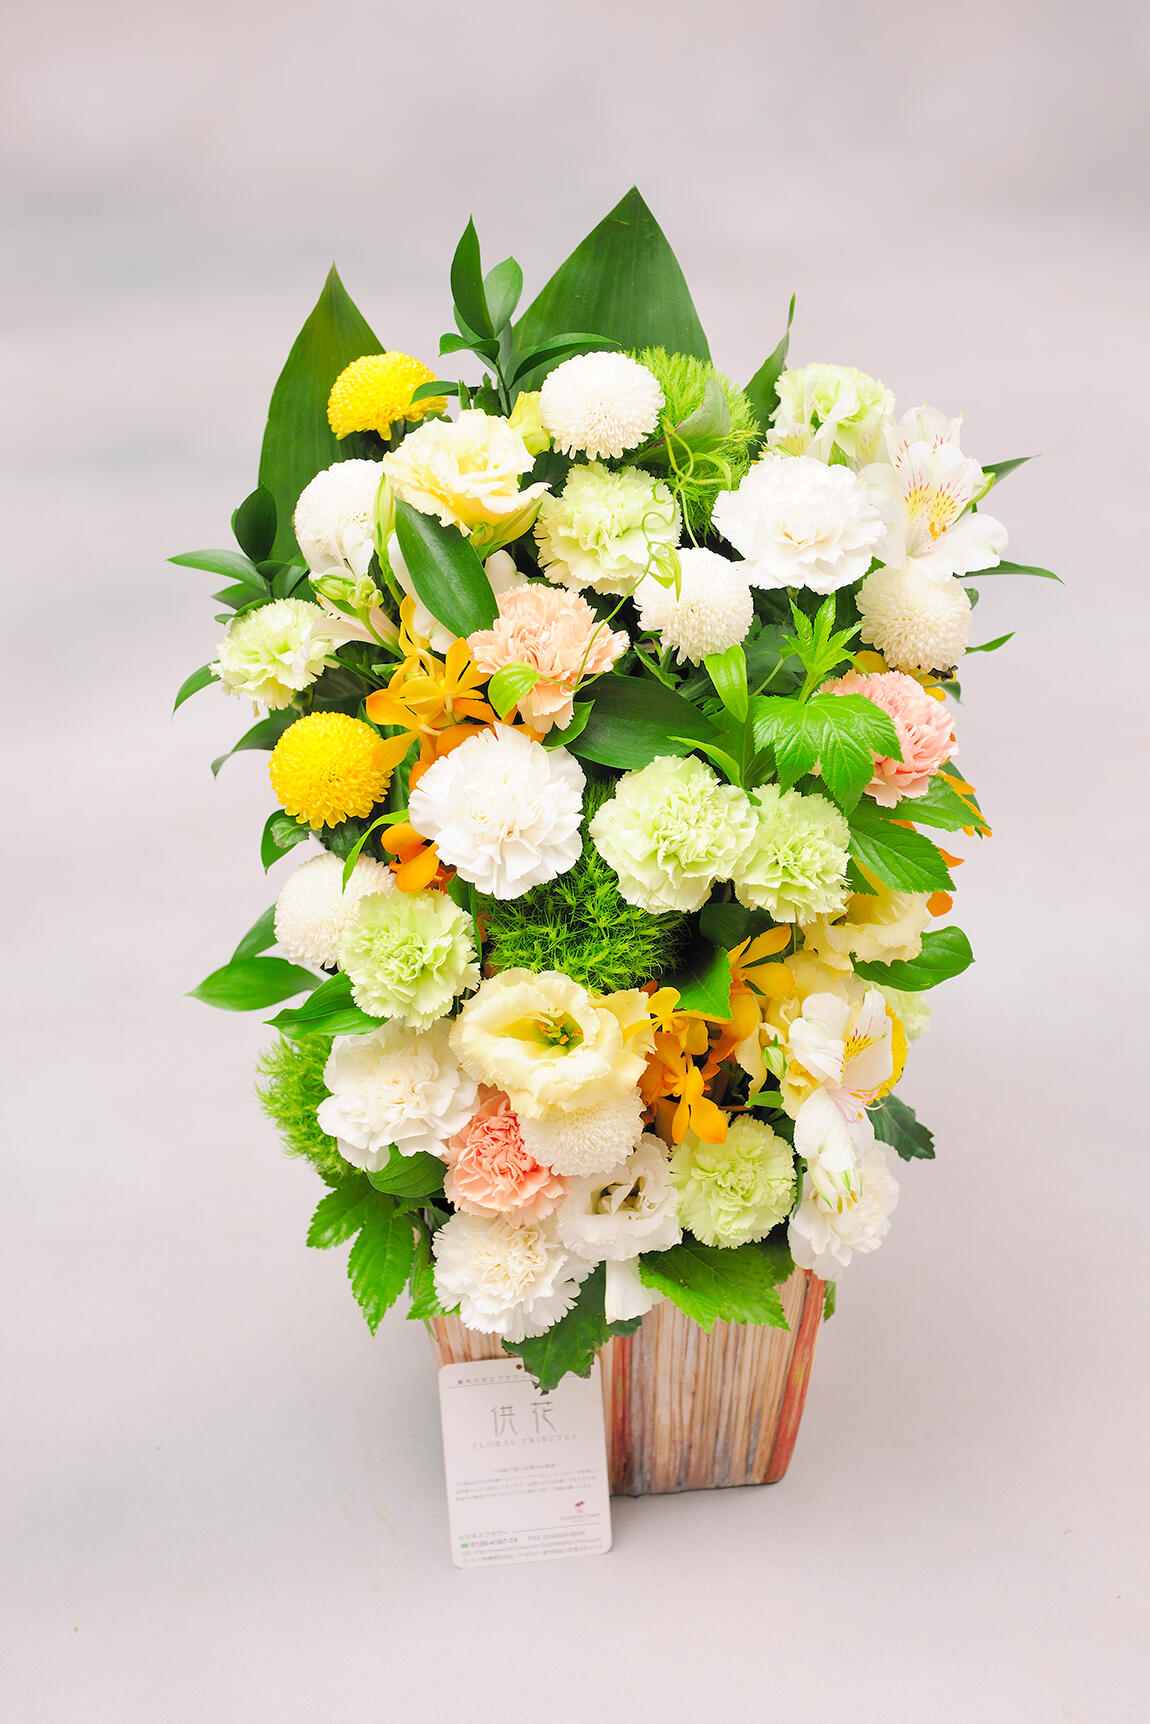 <p>ポンポン菊などを使用し、一般的な葬儀用のお花に比べ少し明るい配色やお仕立てにしているのが特徴です。</p>